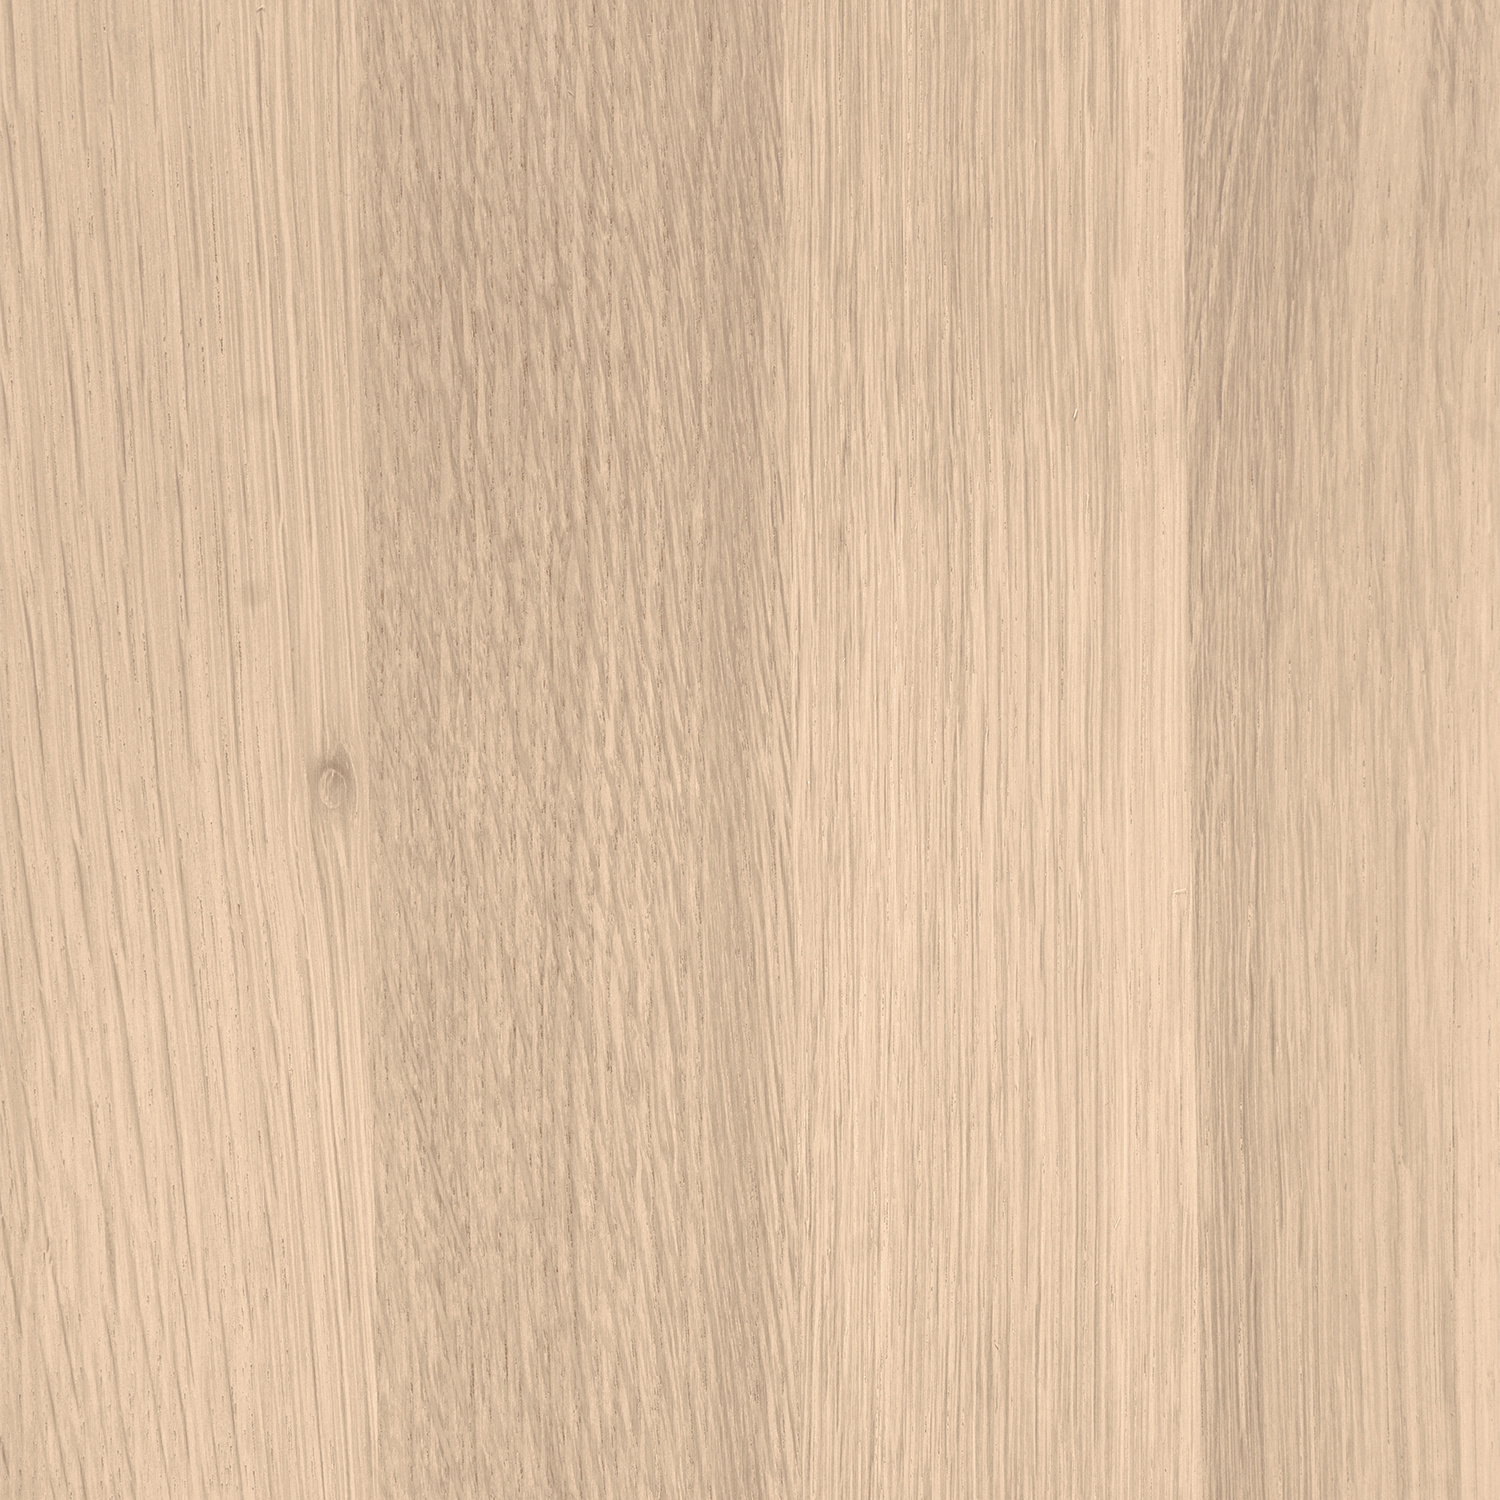  Wandregal Eiche schwebend - mit Baumkante (Optik) - nach Maß - 2,7 cm dick - Eichenholz A-Qualität - vorgebohrtes eichen Wandboard massiv mit natürlichen Baumkant - inklusive (Blind) -Halterungen - verleimt & getrocknet (HF 8-12%) - 20-30x50-248 cm